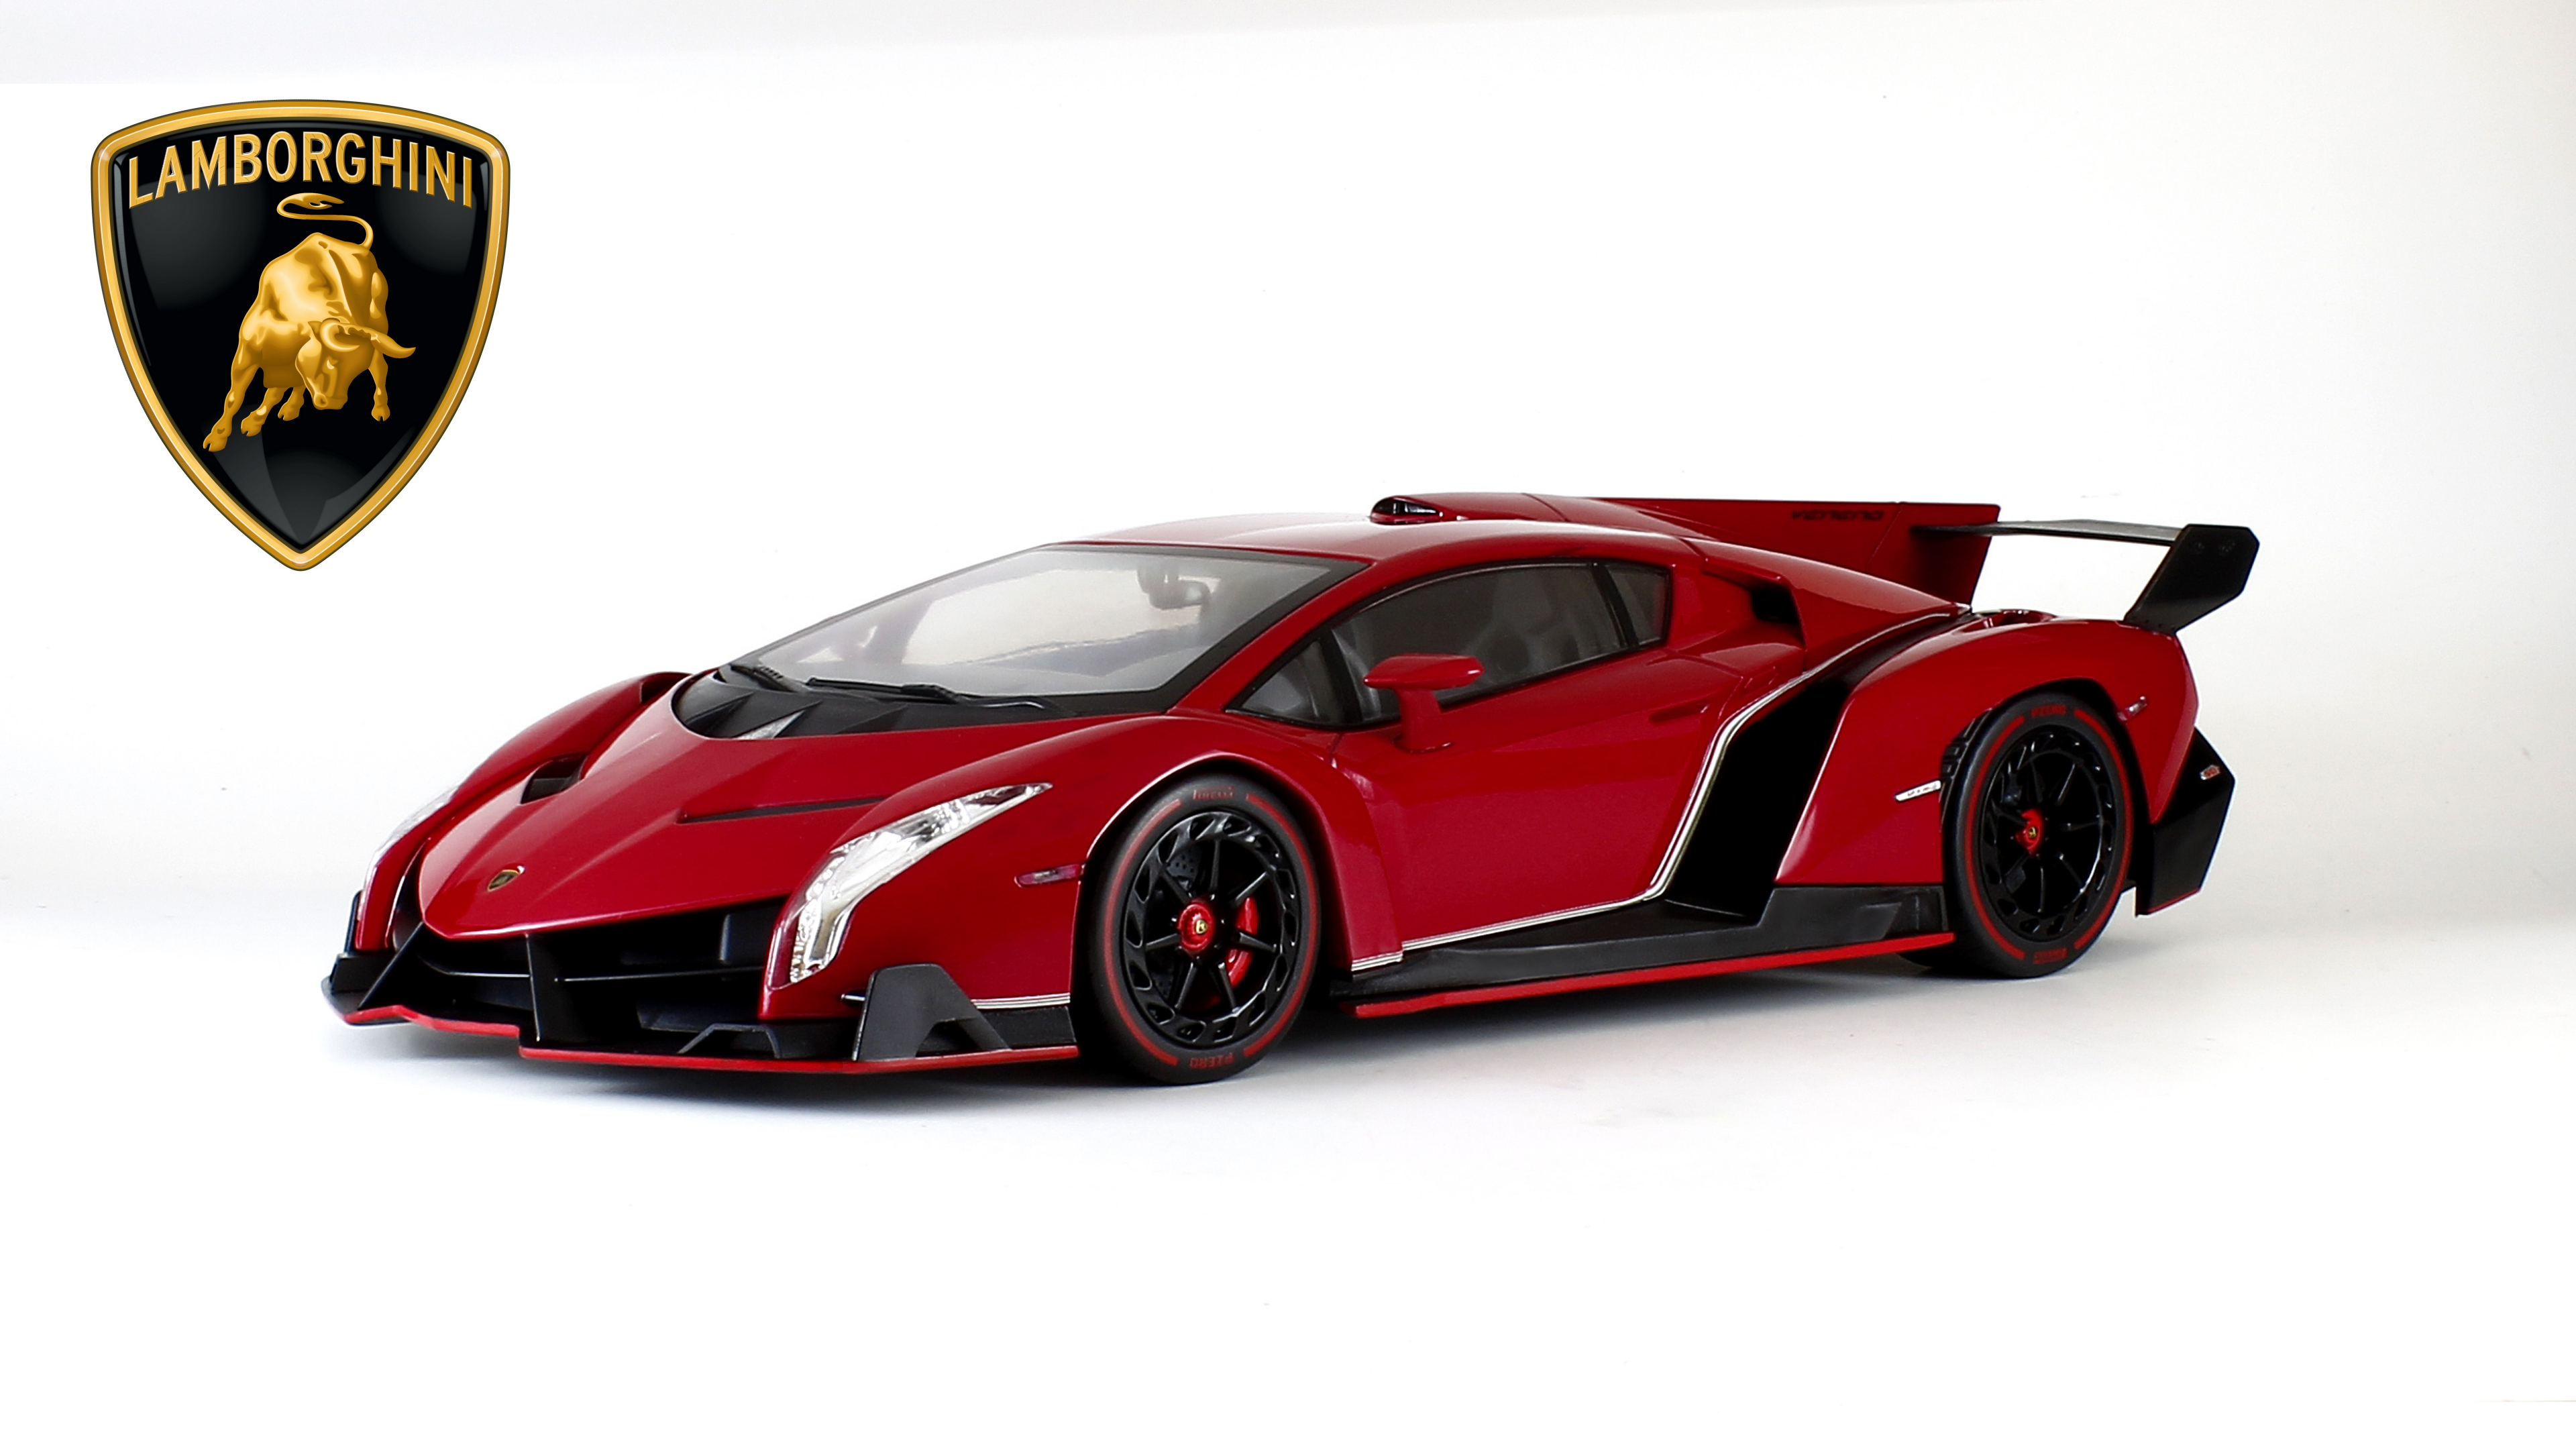 Free download Lamborghini Veneno wallpaper YouBioitcom [3840x2160] for